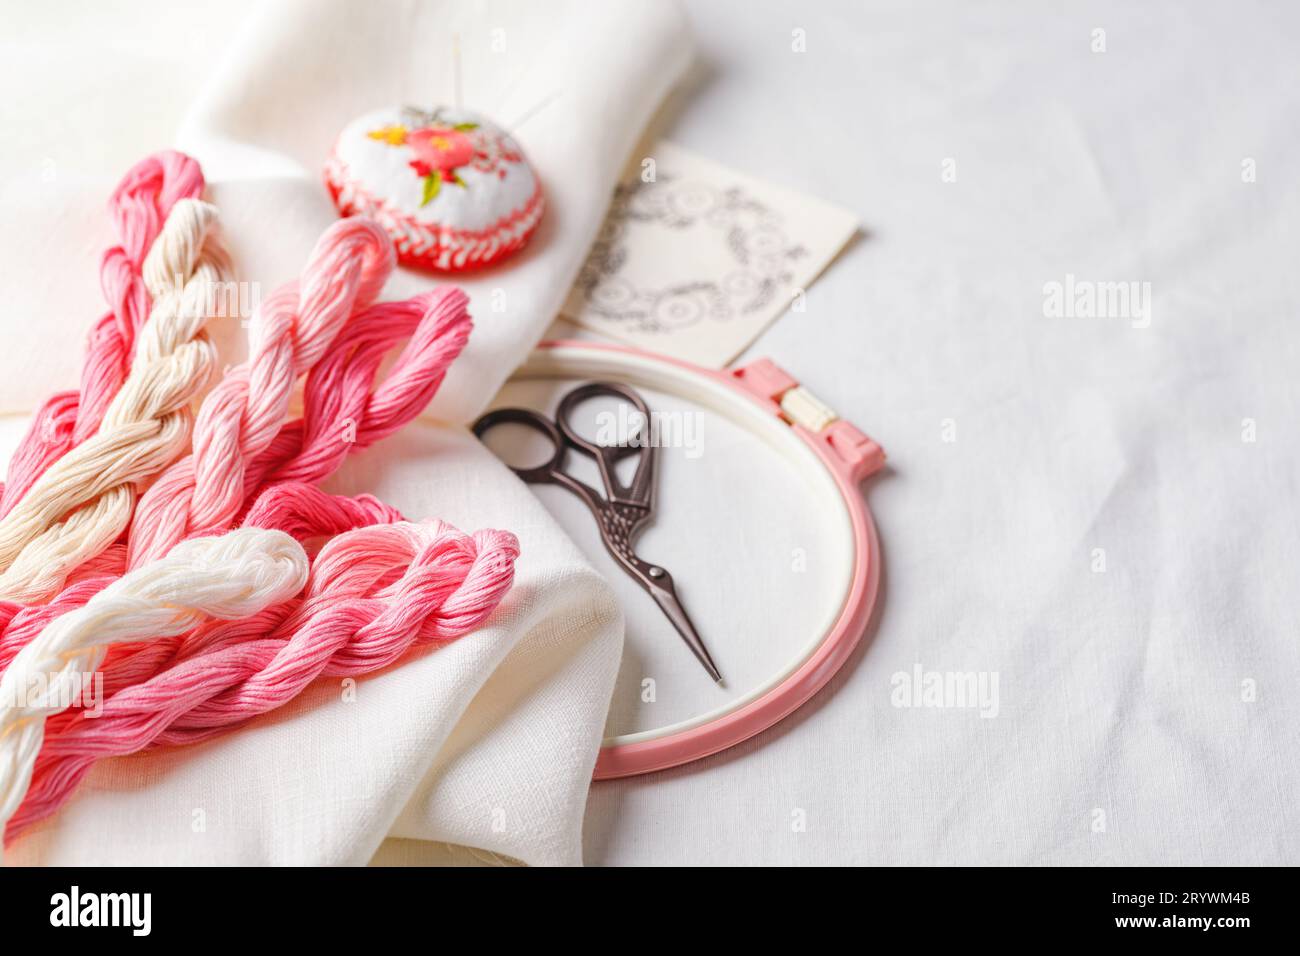 Set da ricamo. Tessuto in lino, motivi ricamati, canestro da ricamo, fili colorati e aghi. Foto Stock